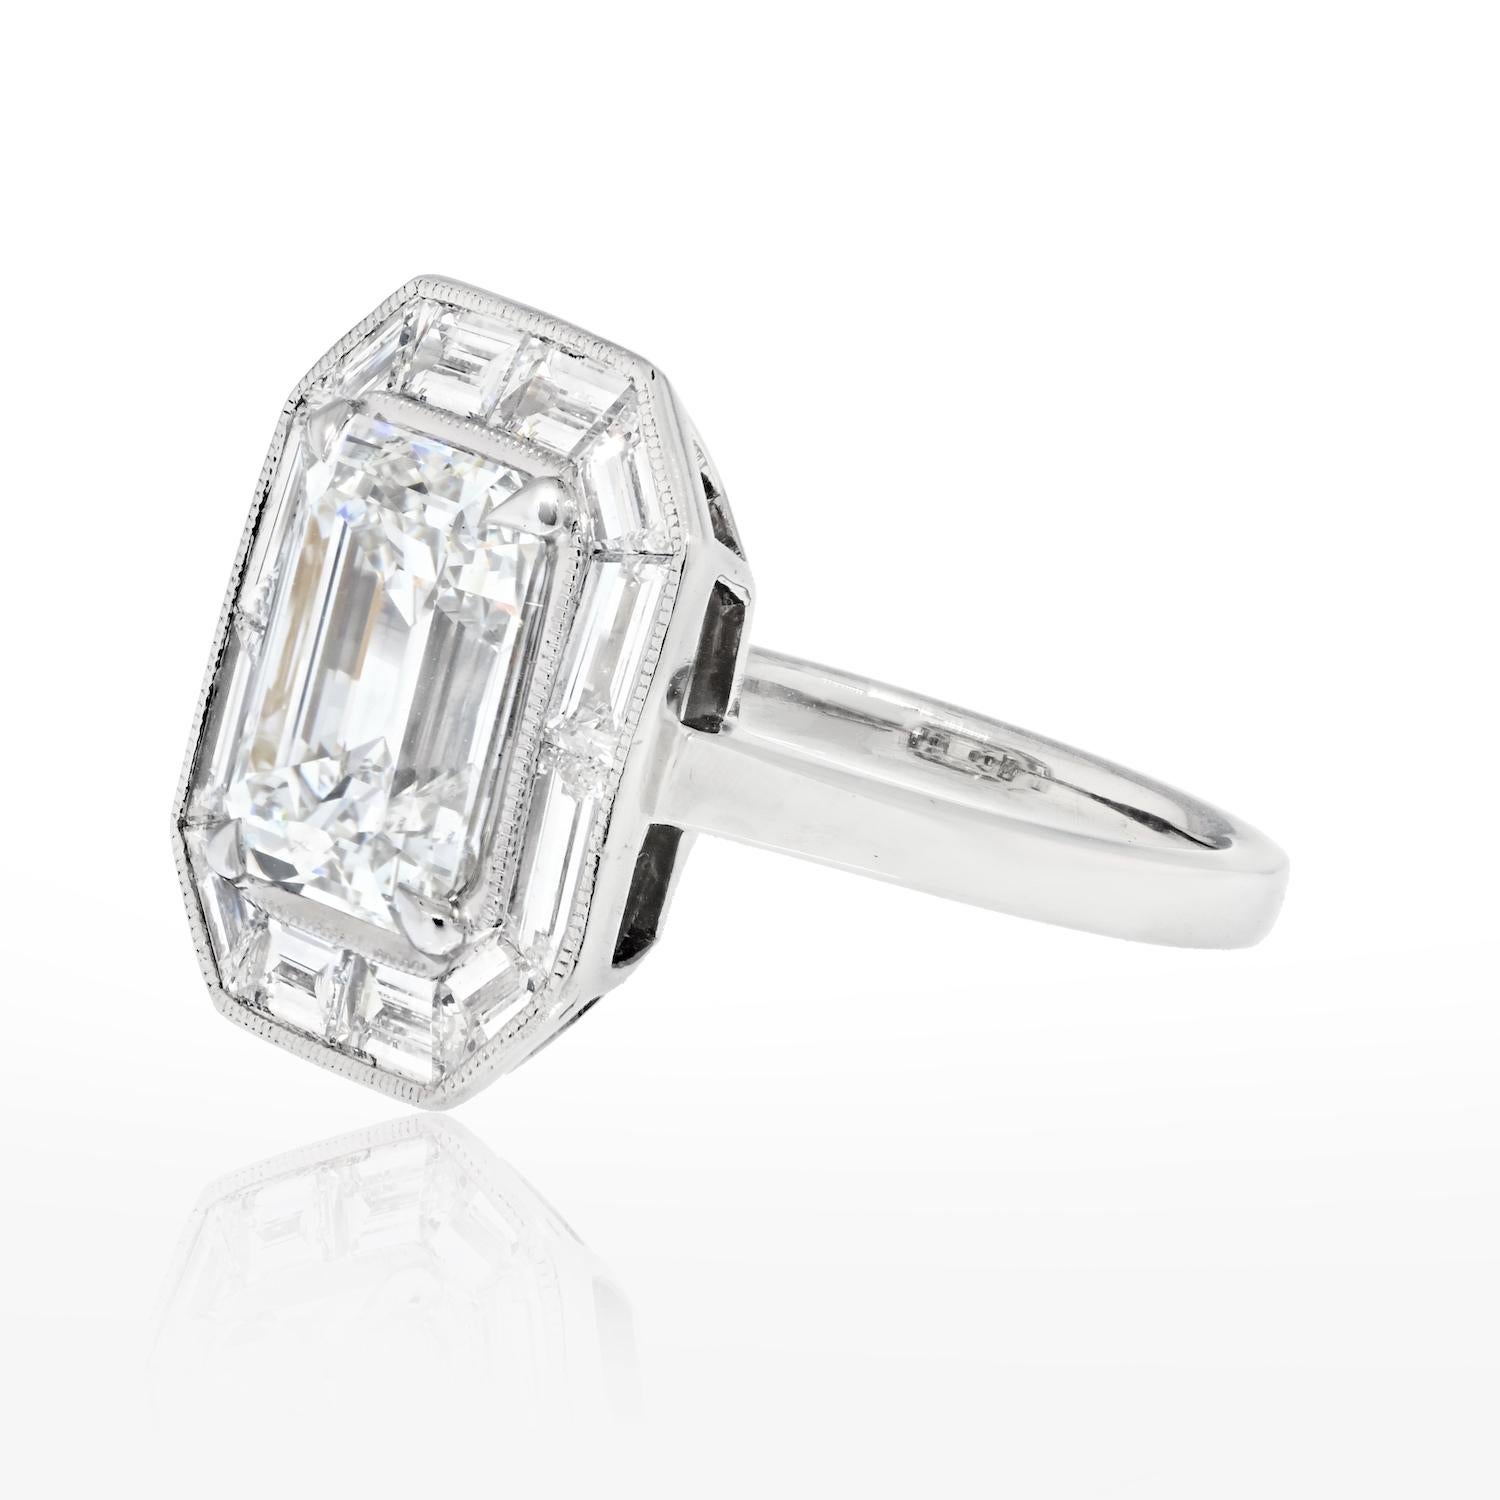 Bague de fiançailles en diamant taille émeraude de 4 carats.

Cette magnifique bague de fiançailles en platine est ornée d'un superbe diamant taille émeraude certifié par le GIA. 
Nous vous promettons que si vous aimez l'Art Déco, l'architecture et